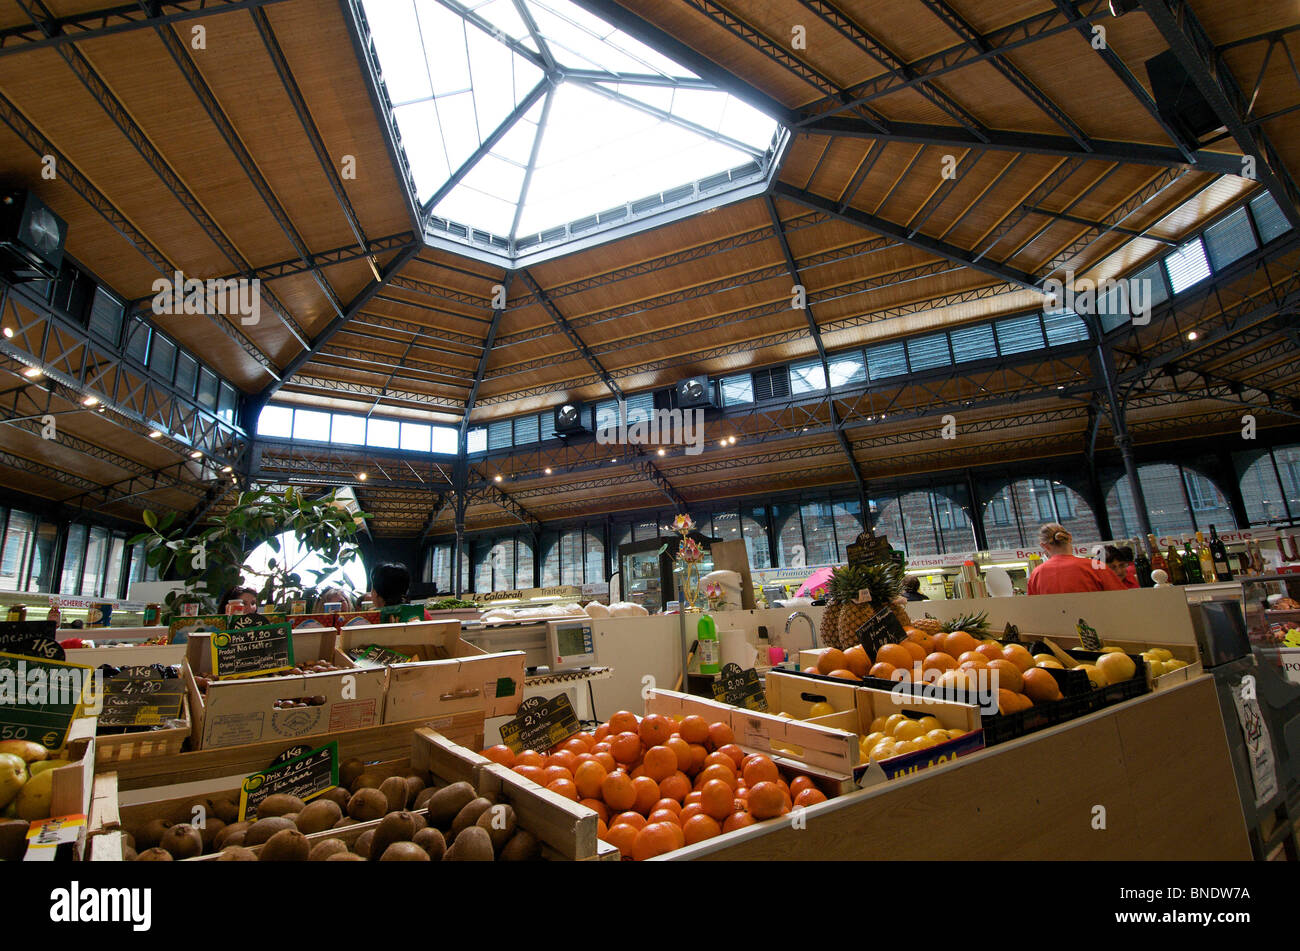 Albi - mercato tipico mercato coperto di Albi, Tarn, Francia, Europa Foto Stock